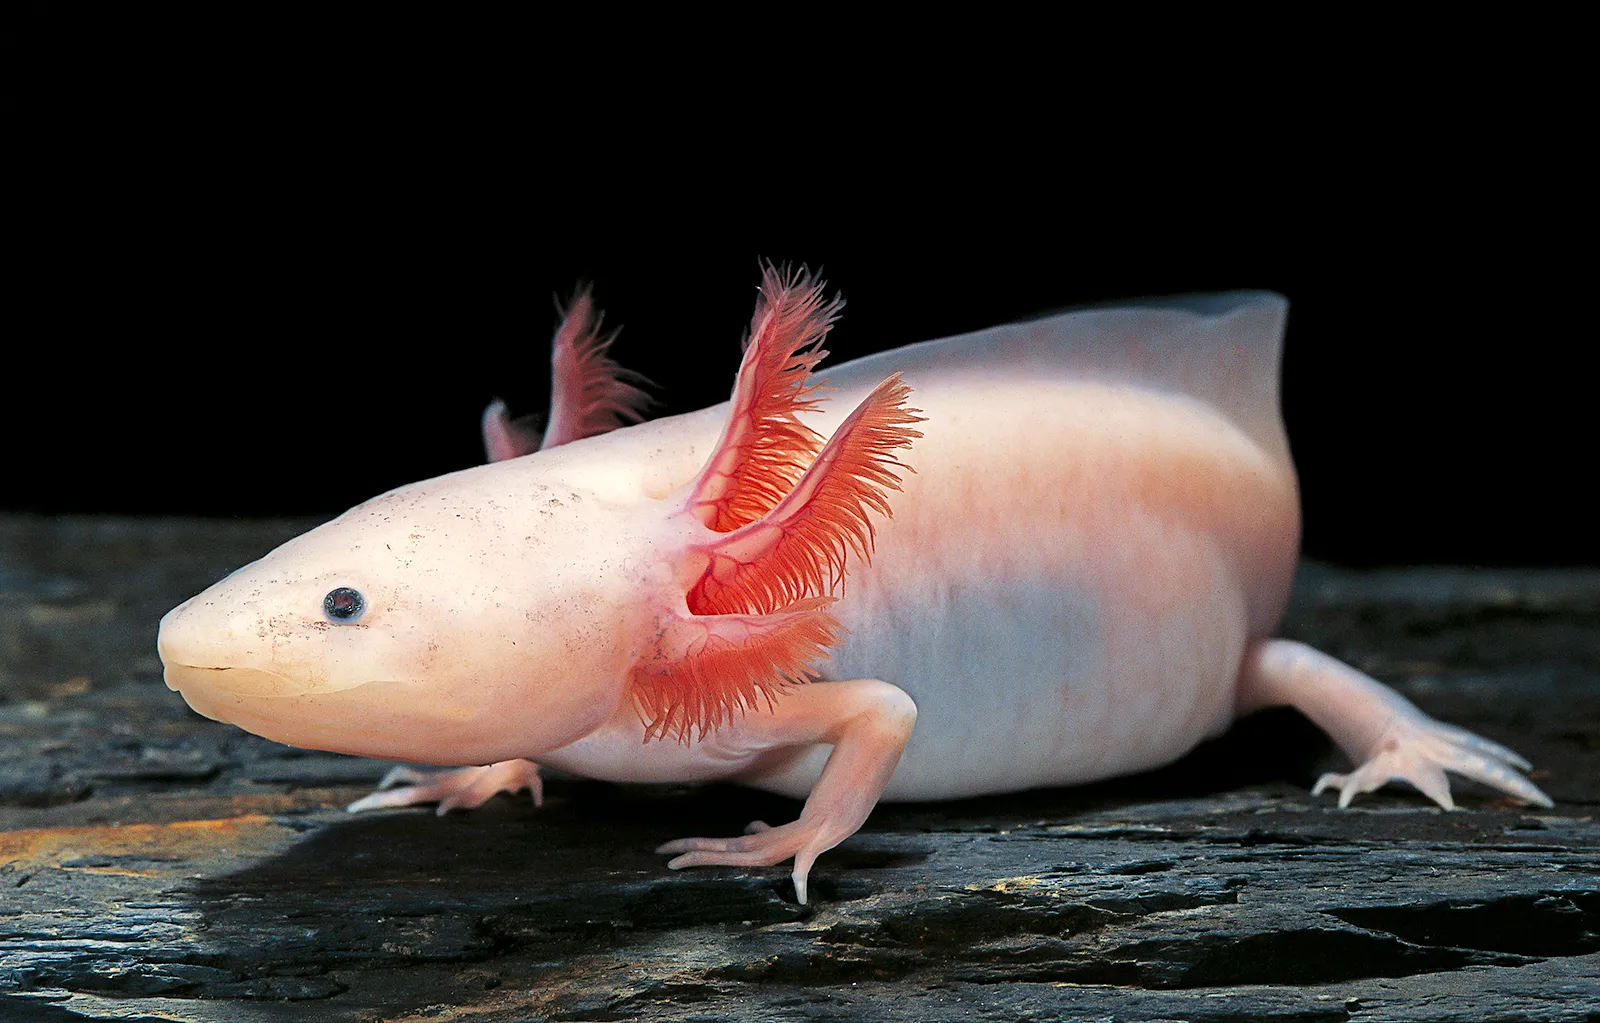 axolotl.